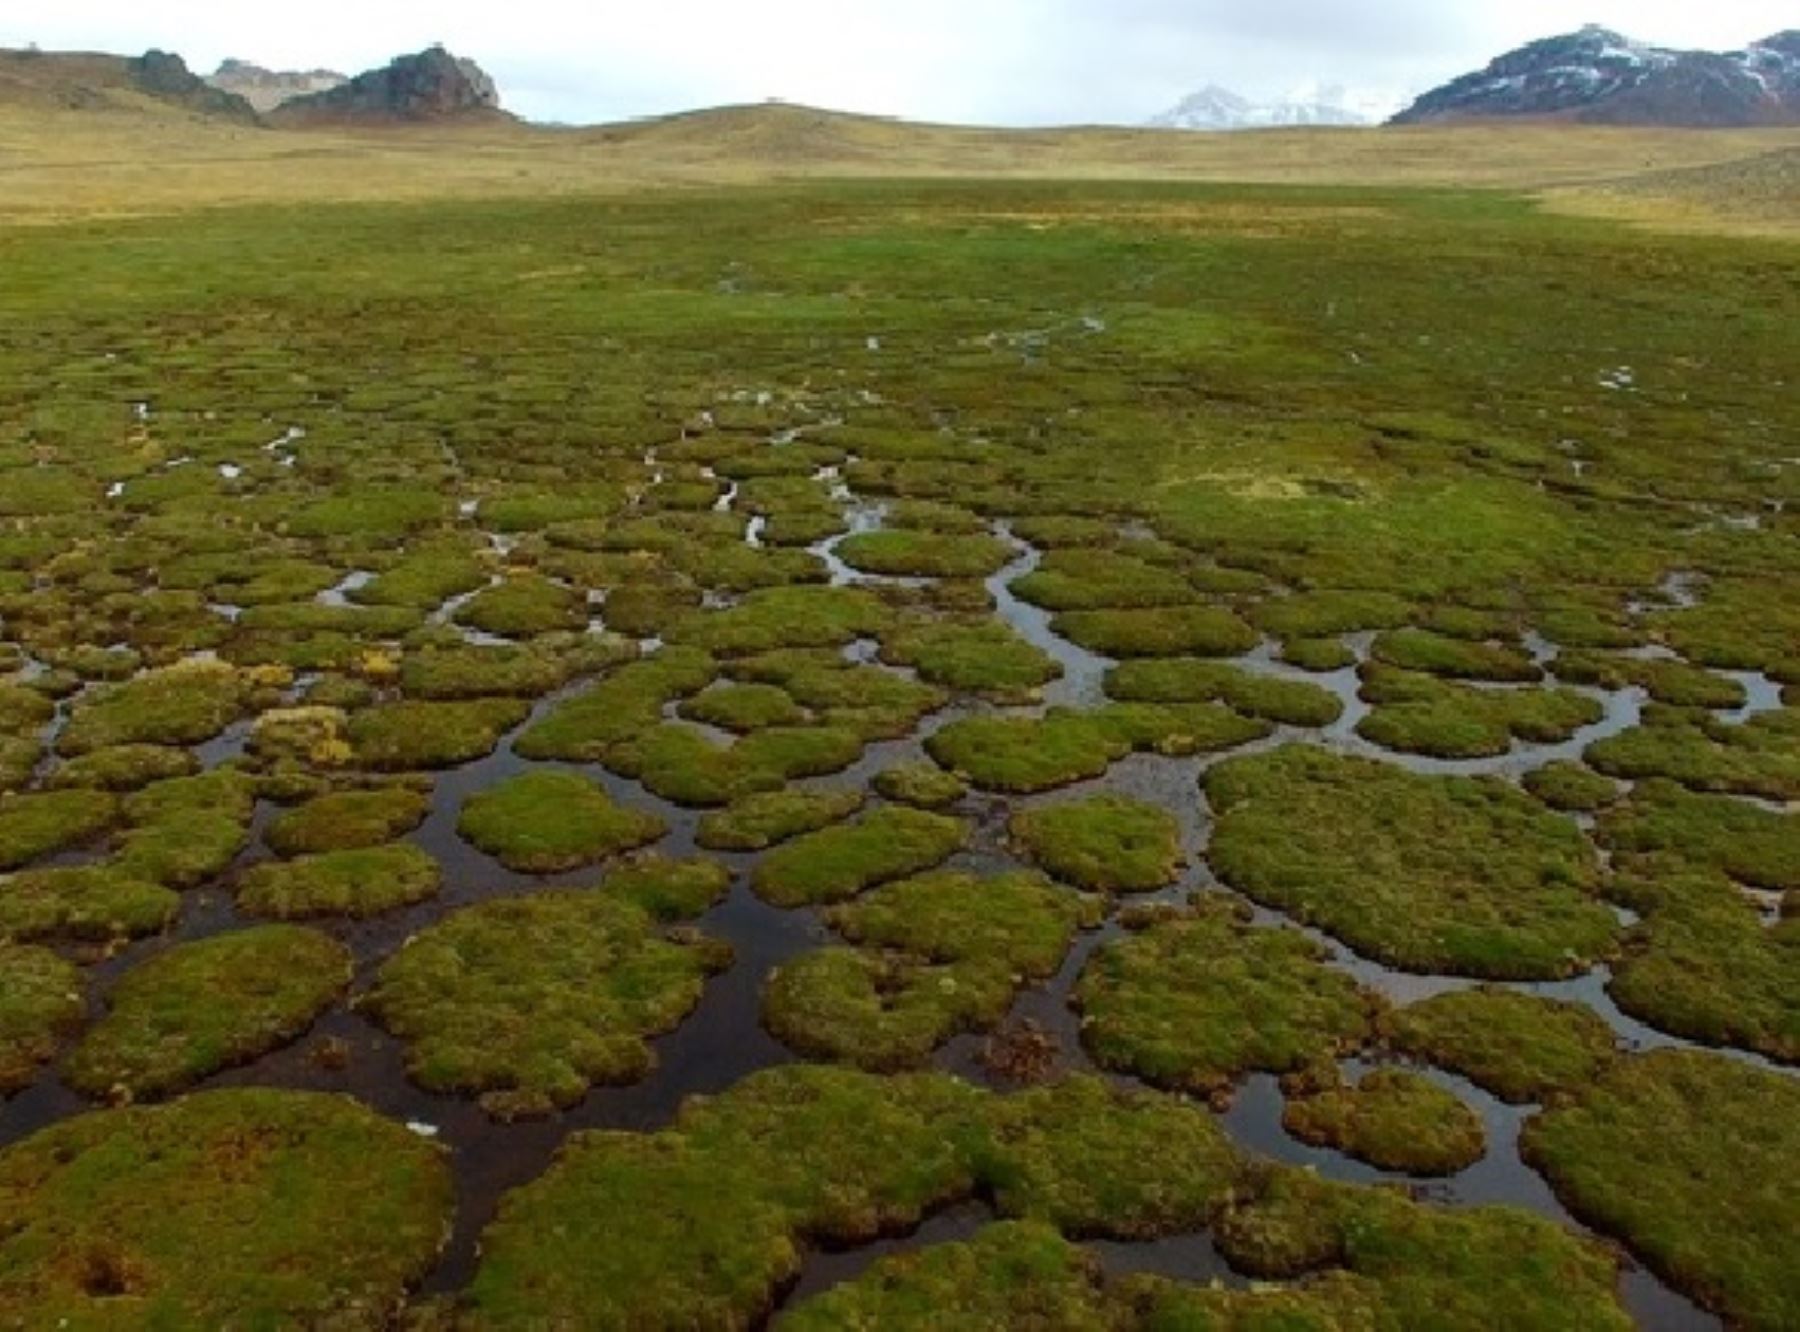 El Minam destacó el aporte de las turberas (bofedales, humedales, pantanos) en la gestión sostenible de los recursos naturales del Perú en la cumbre de la COP26 que se desarrolla en Escocia. ANDINA/Difusión